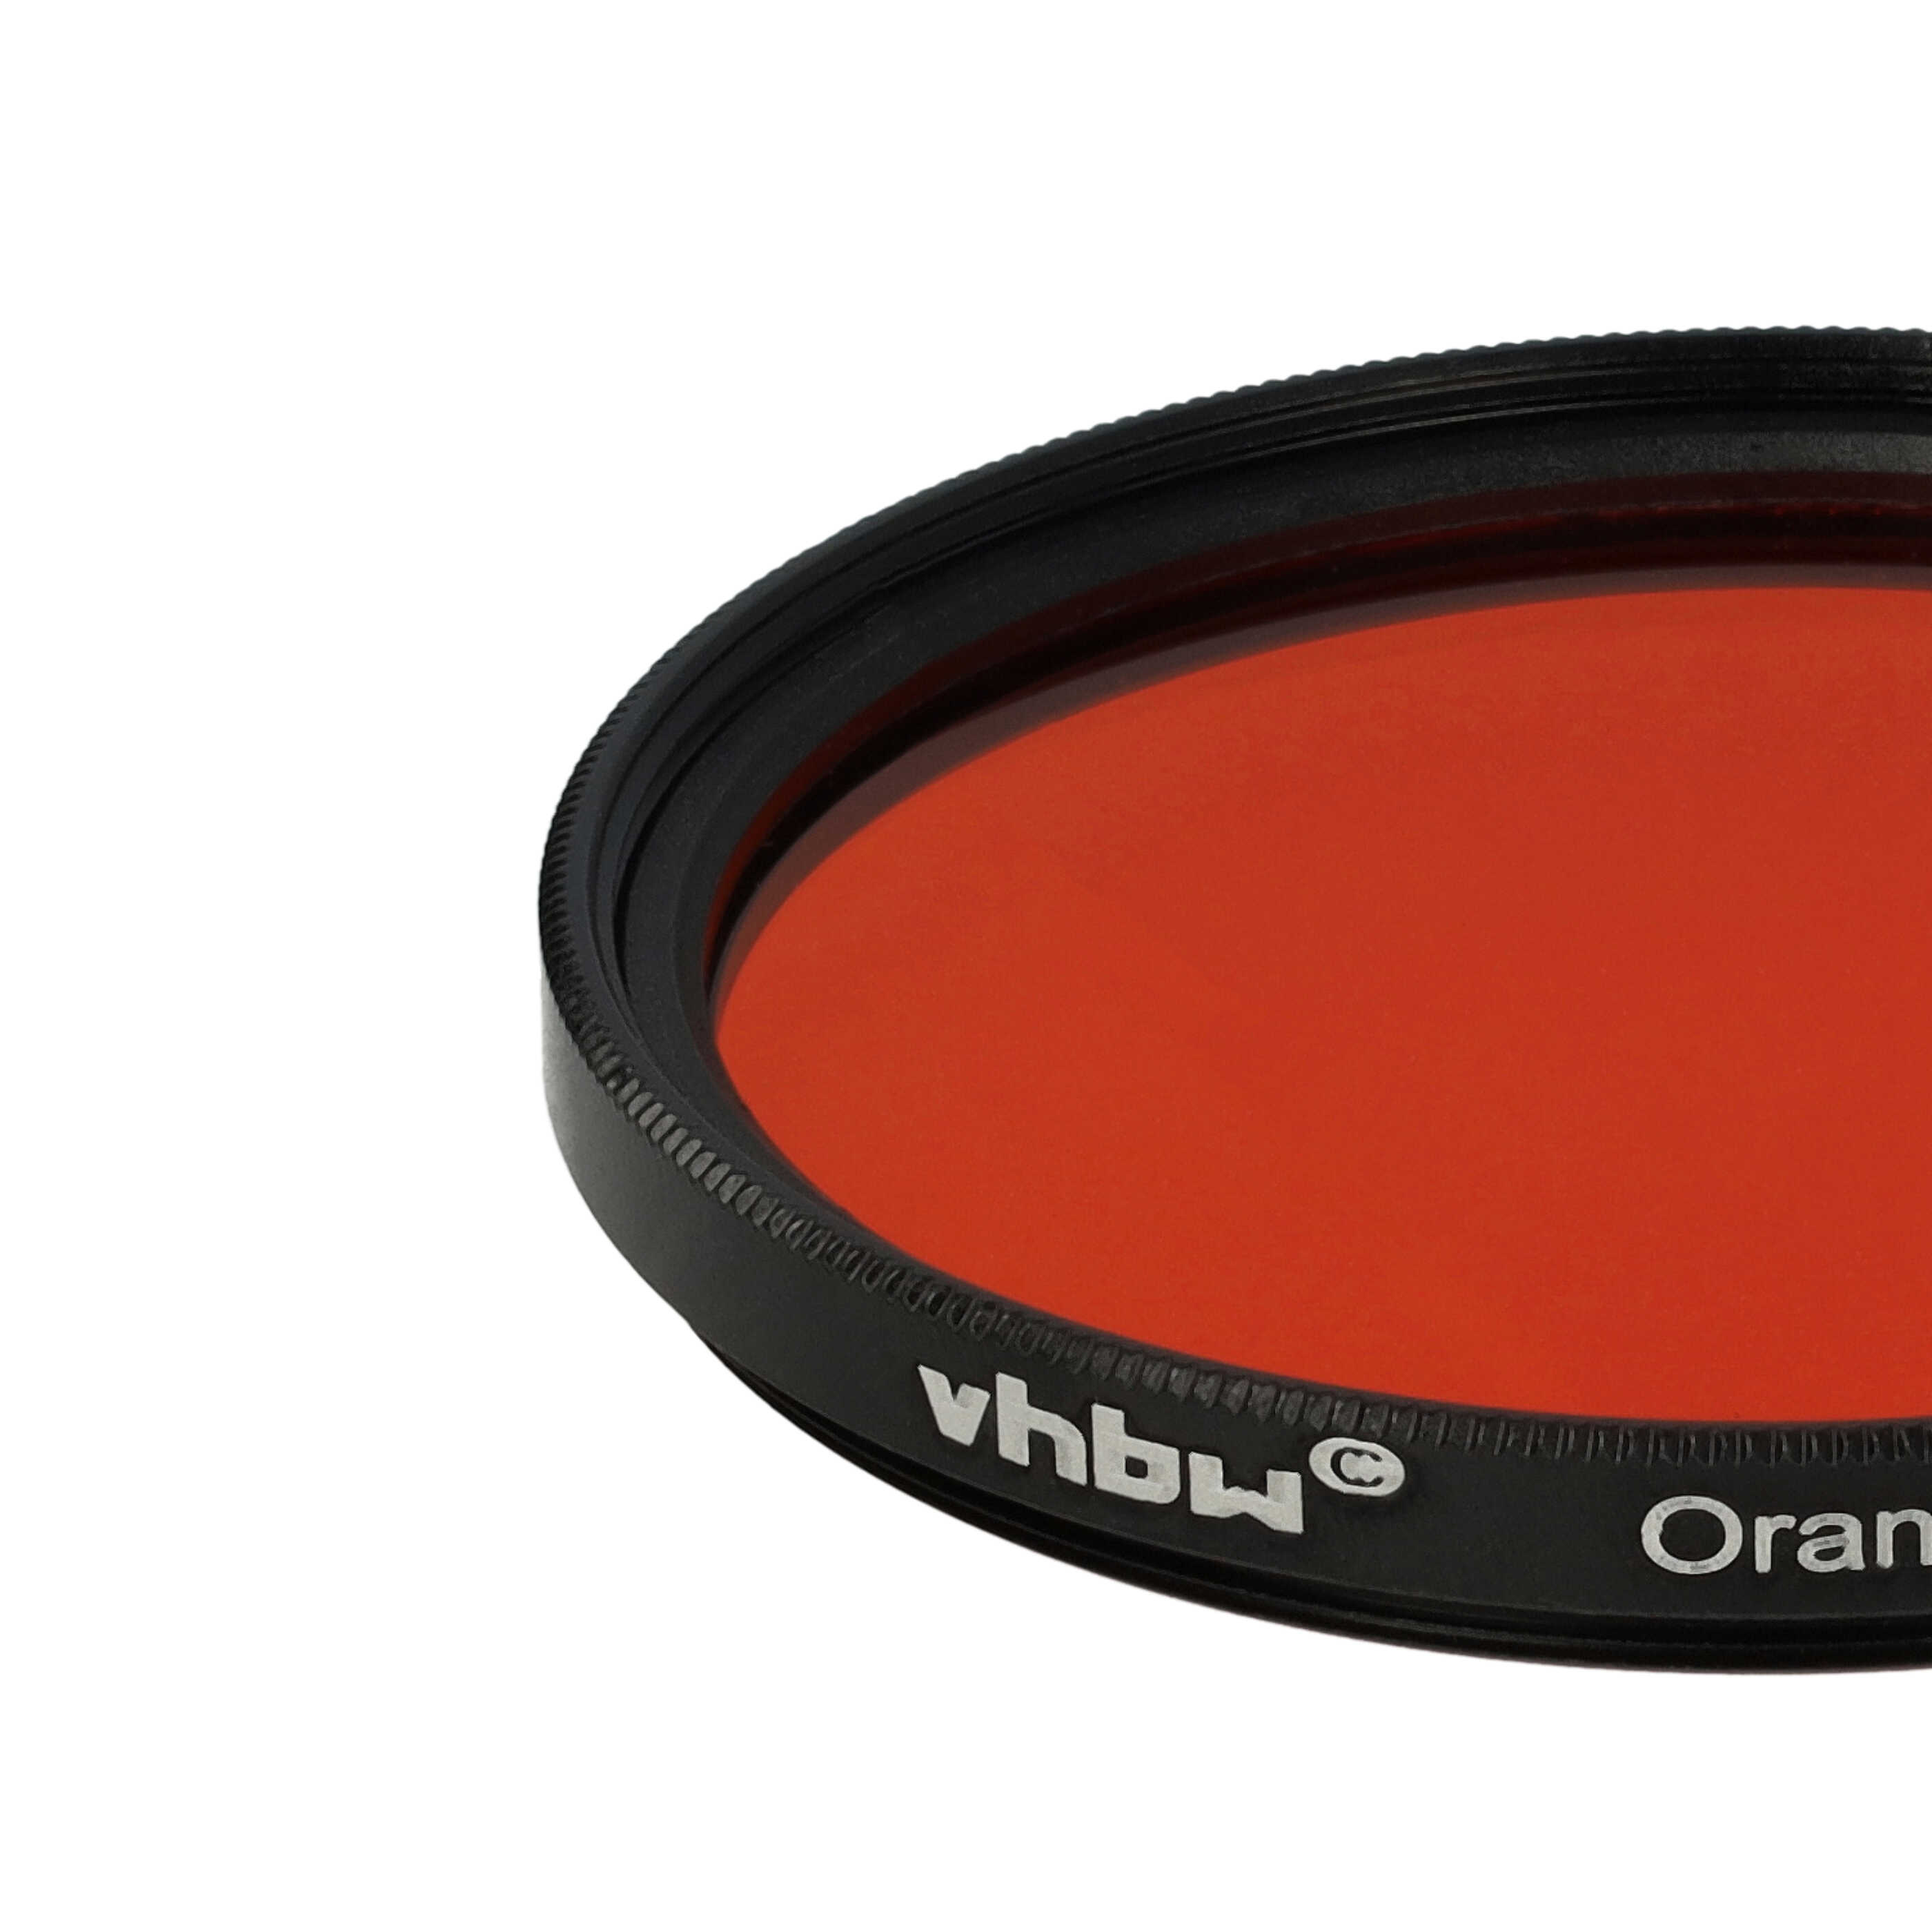 Filtr fotograficzny na obiektywy z gwintem 49 mm - filtr pomarańczowy